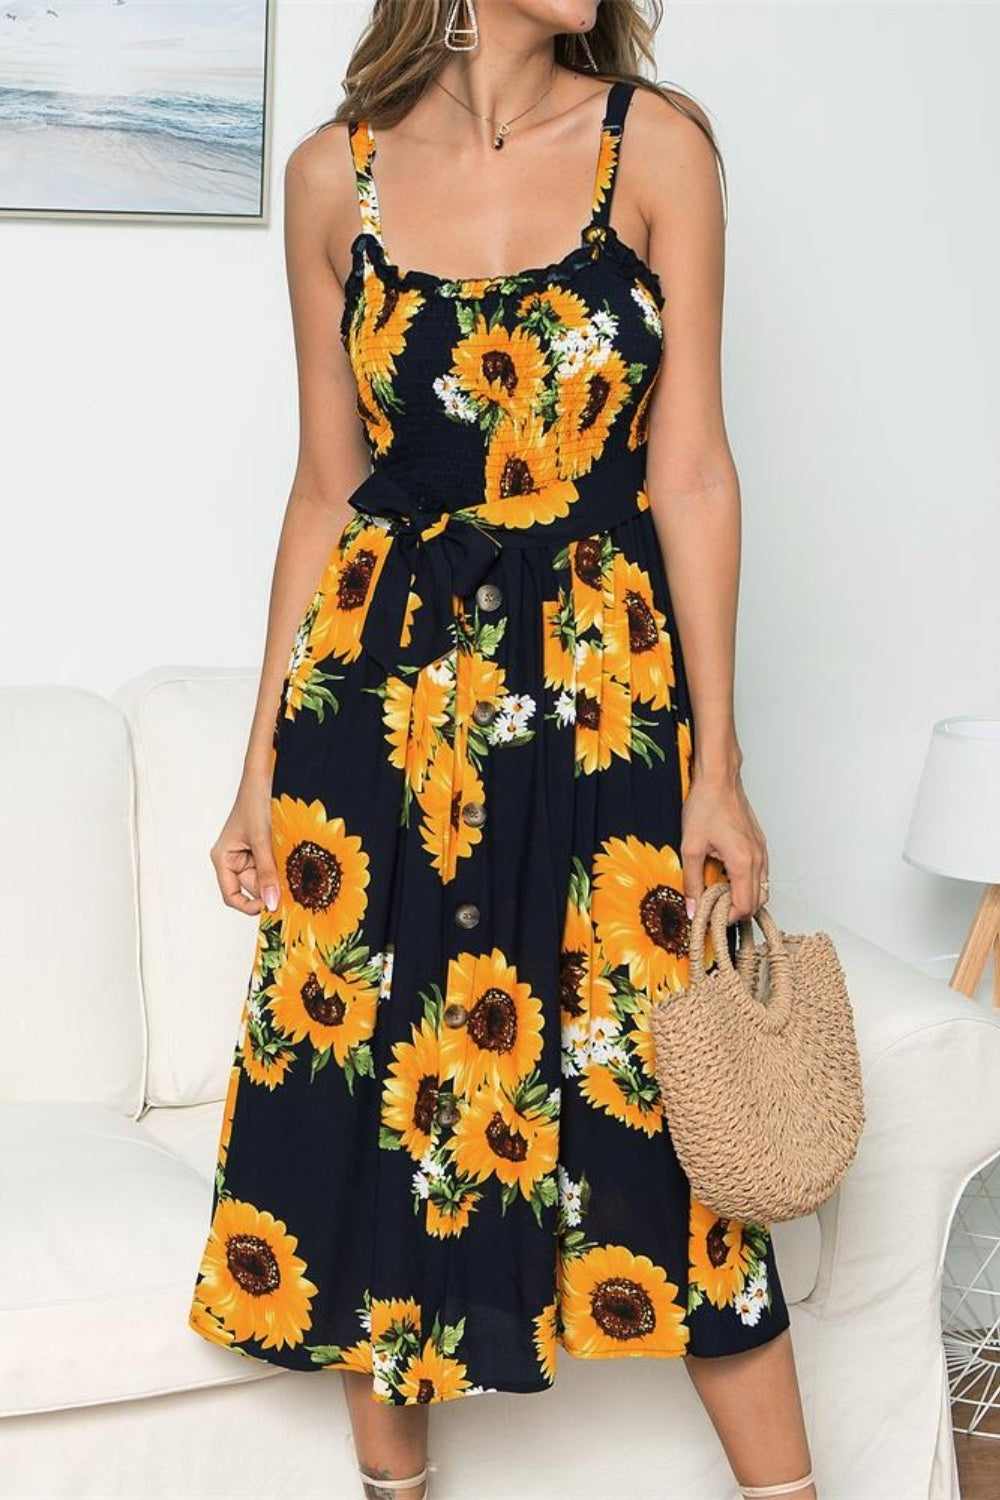 Sunflower Print Sleeveless Cami Dress for Women Over 50 - Perfect Summer Beach Wedding Guest Party Attire